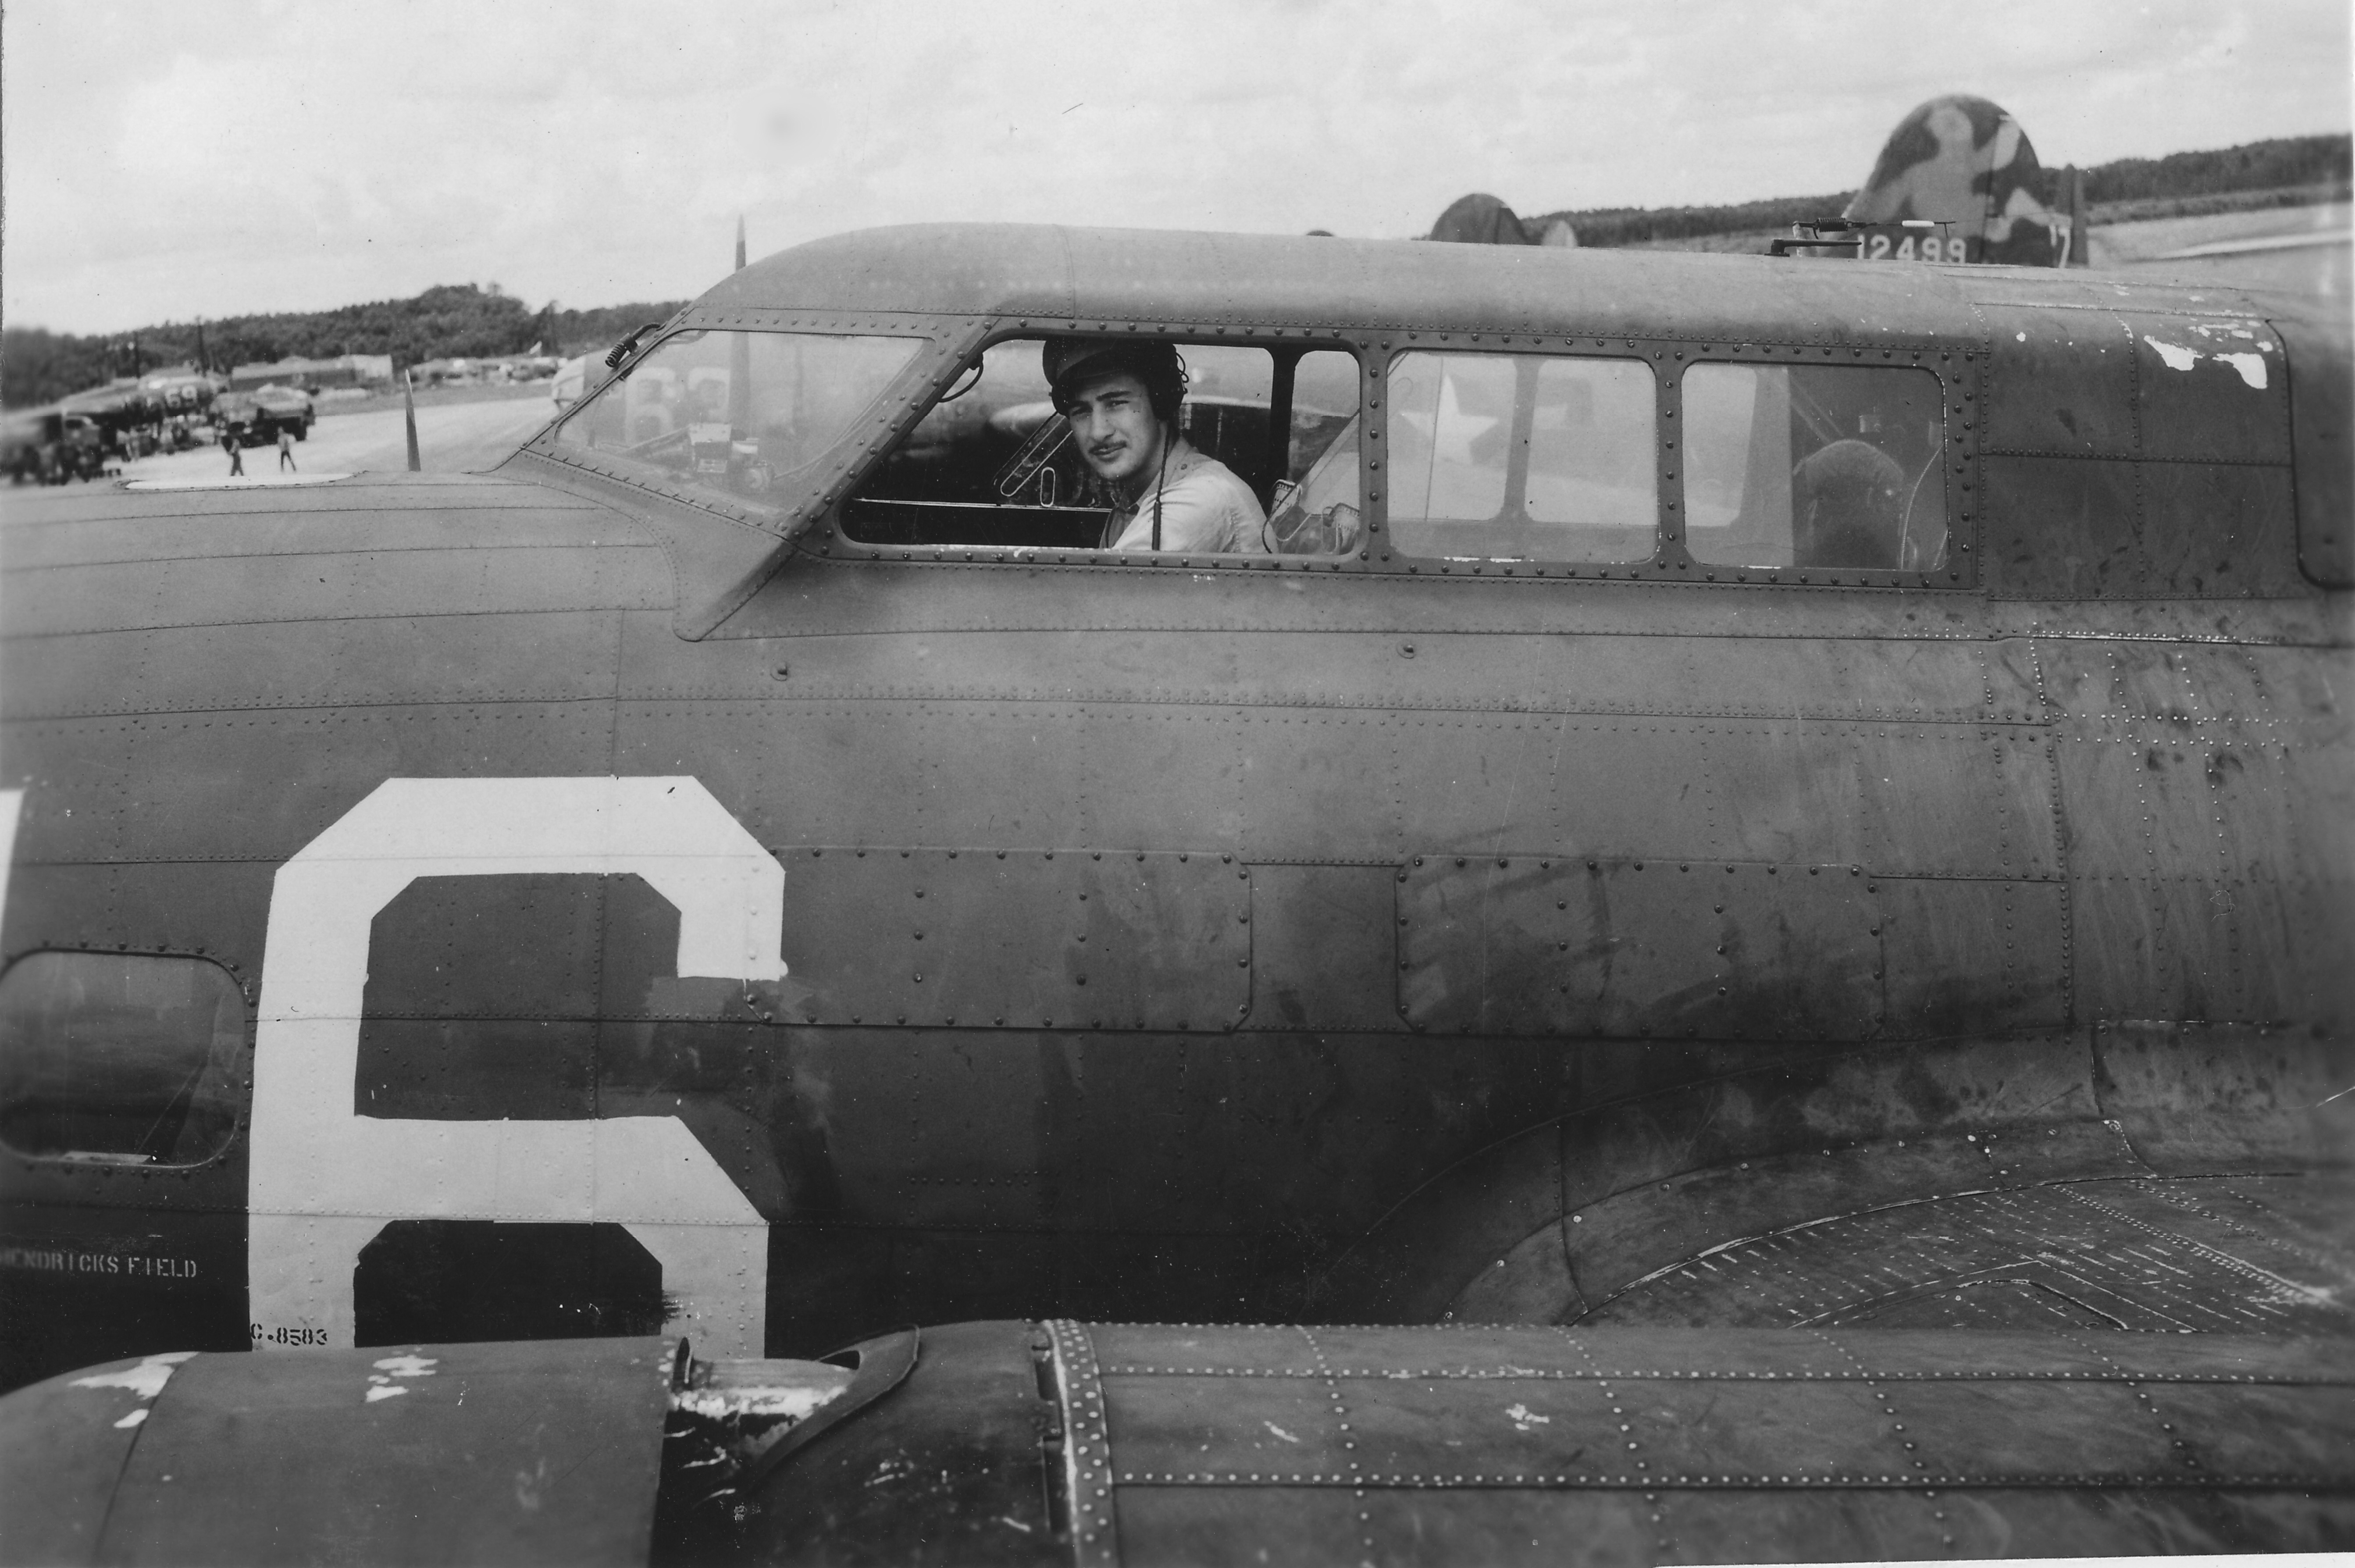 B-17 #38-583